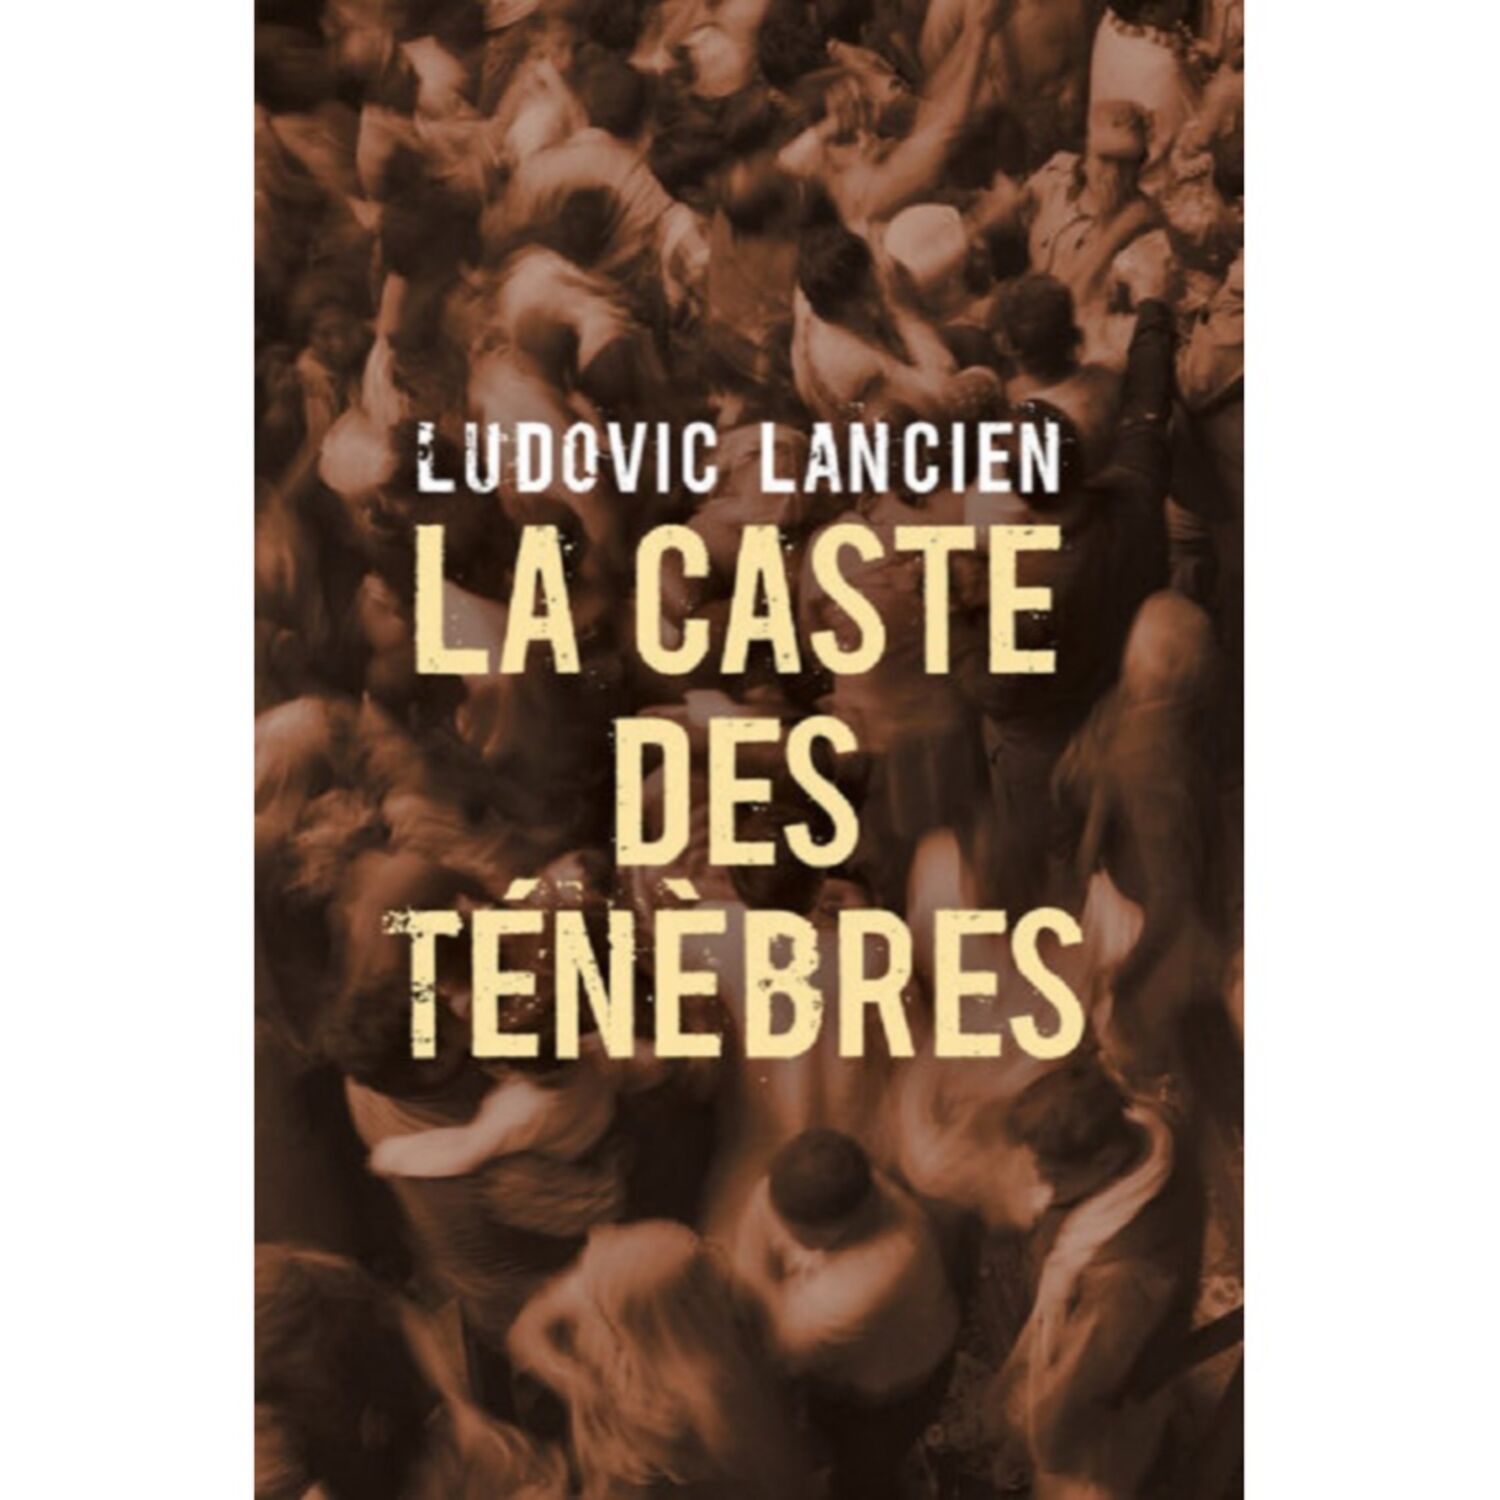 La caste des ténèbres : le 3ème polar de Ludovic Lancien